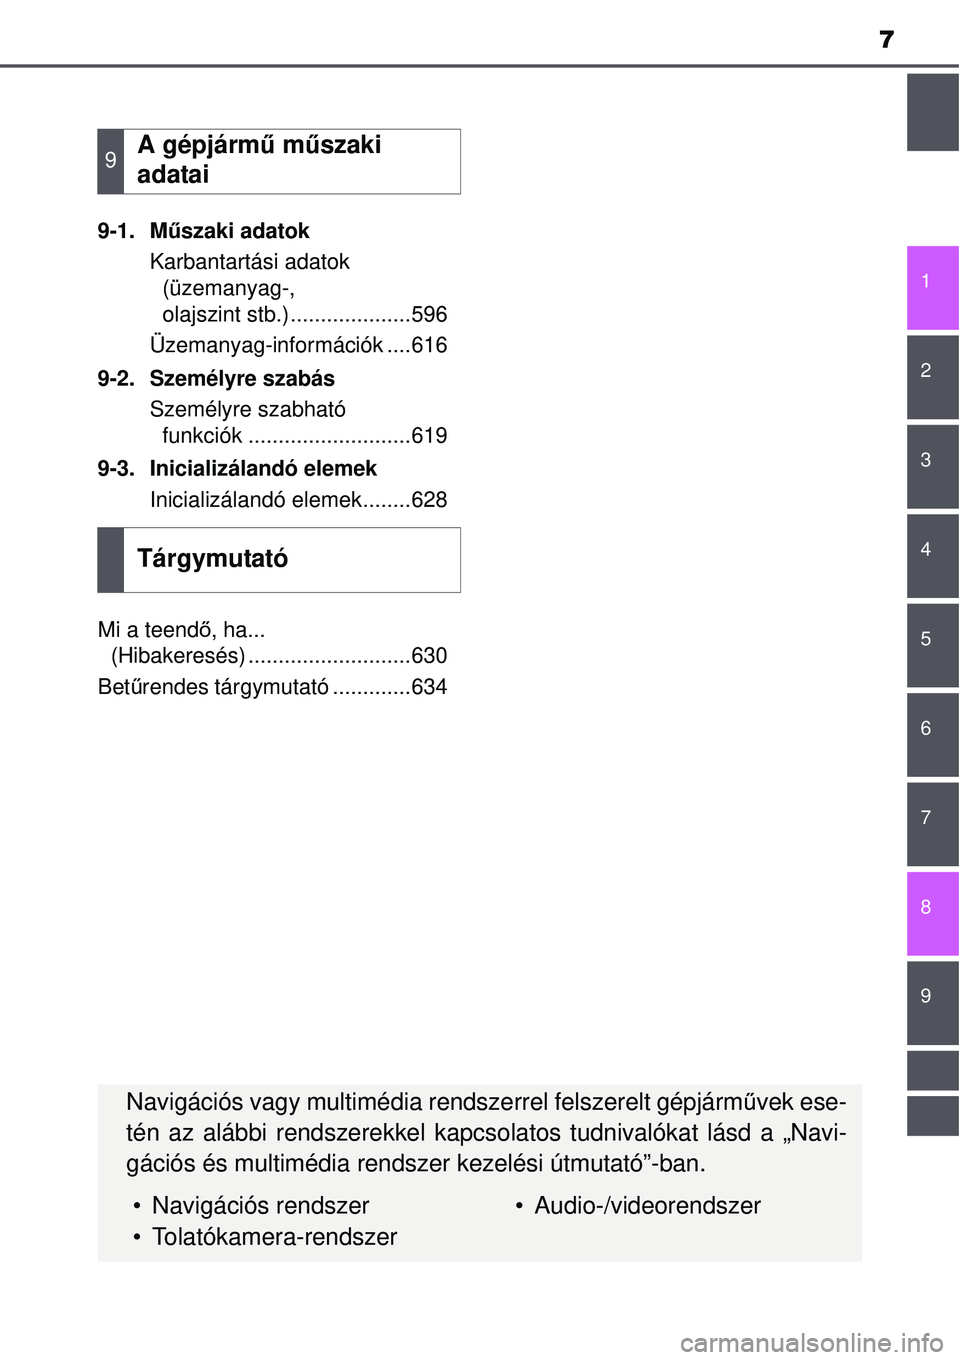 TOYOTA AVENSIS 2015  Kezelési útmutató (in Hungarian) 7
1
8 6 5
4
3
2
9
7
9-1. Műszaki adatok
Karbantartási adatok  (üzemanyag-, 
olajszint stb.)....................596
Üzemanyag-információk ....616
9-2. Személyre szabás Személyre szabható funk